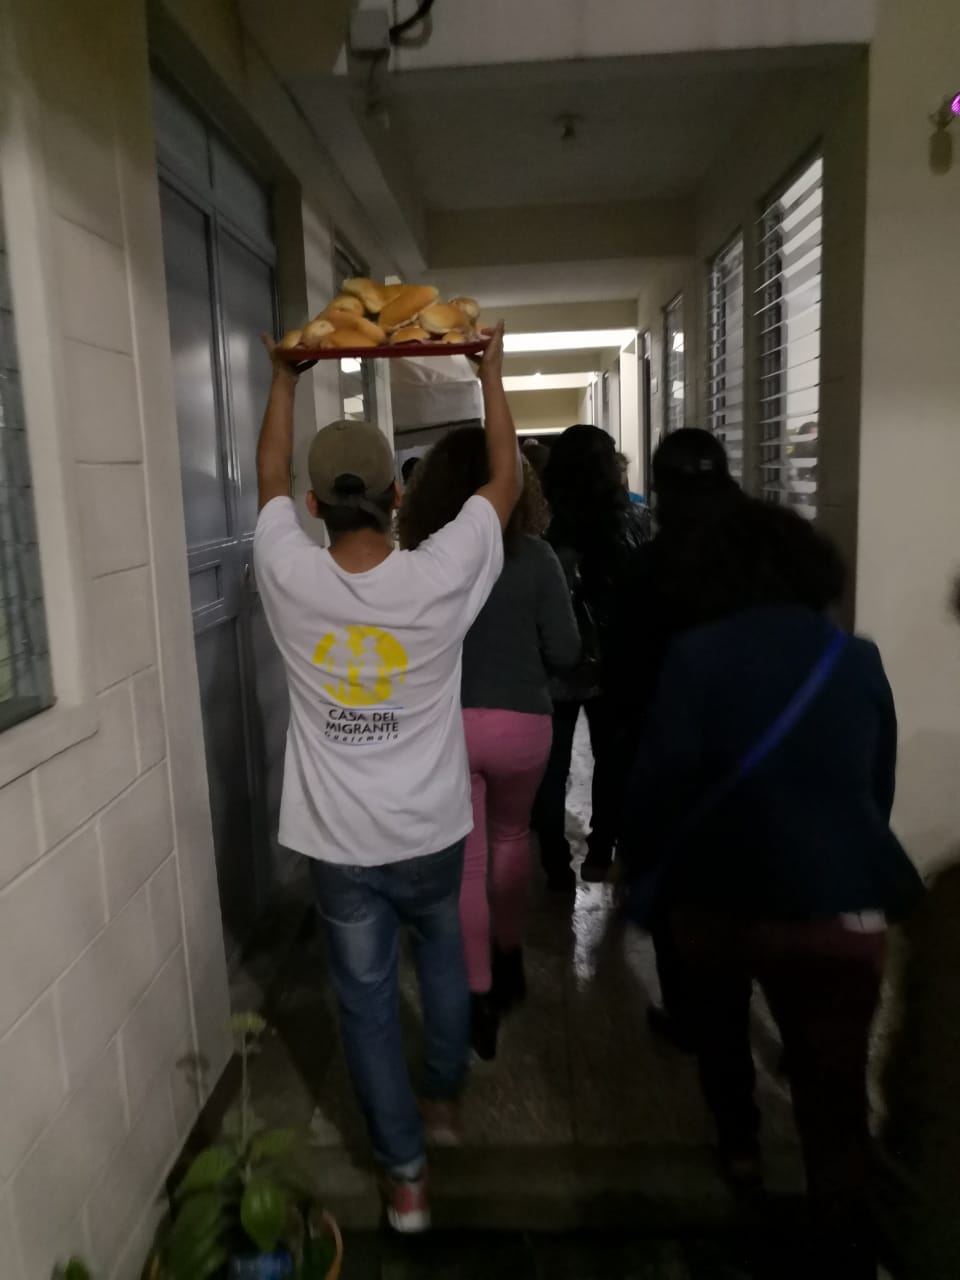 Cabrini Members carrying food to serve Members of the Honduran Migrant Caravan